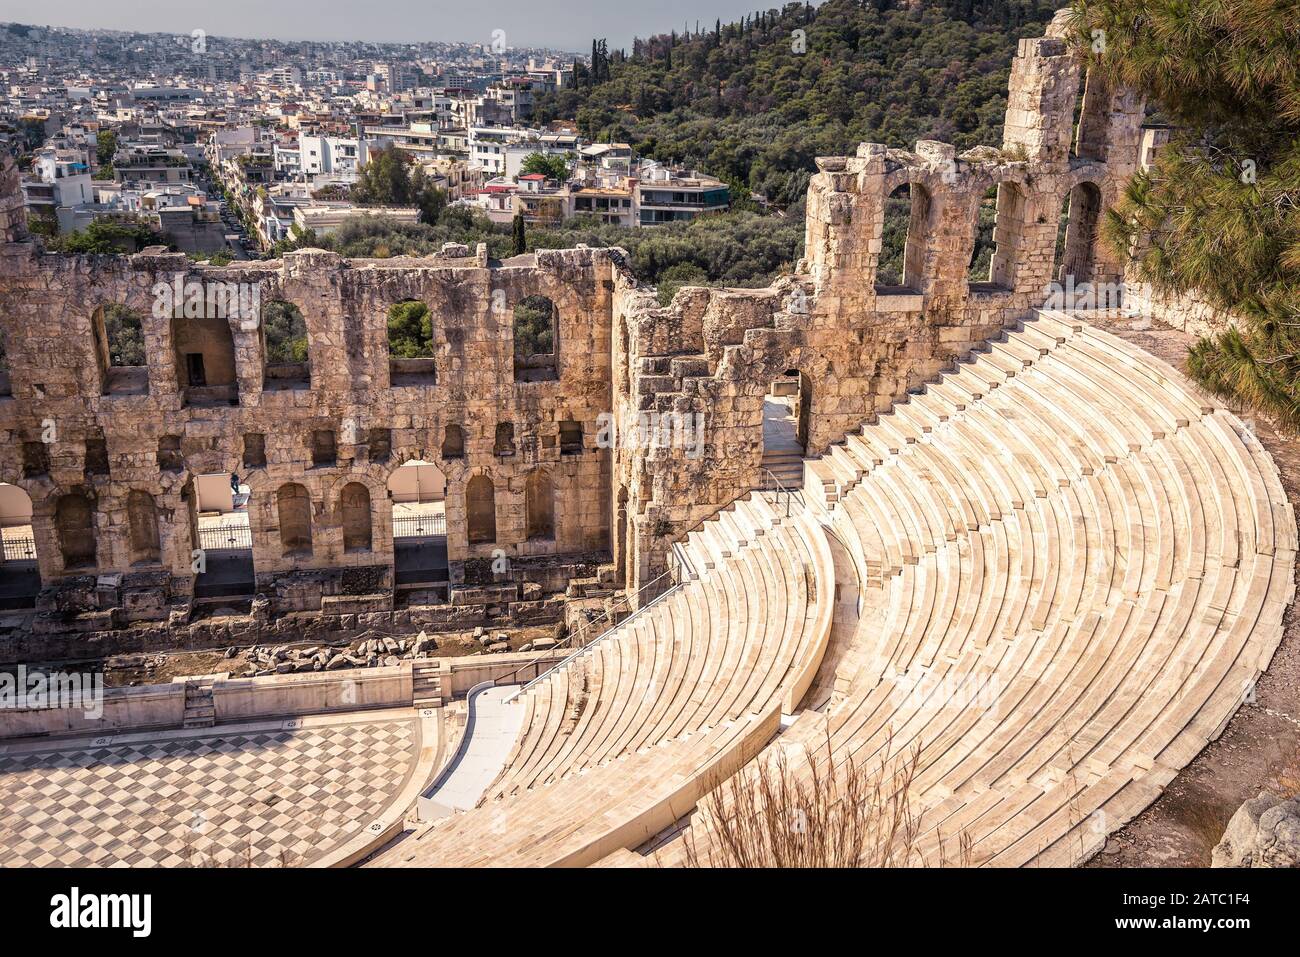 Odeon di Erode Attico presso l'Acropoli, Atene, Grecia. E' uno dei principali punti di riferimento di Atene. Famoso teatro vecchio che si affaccia sulla città di Atene. Scen Foto Stock